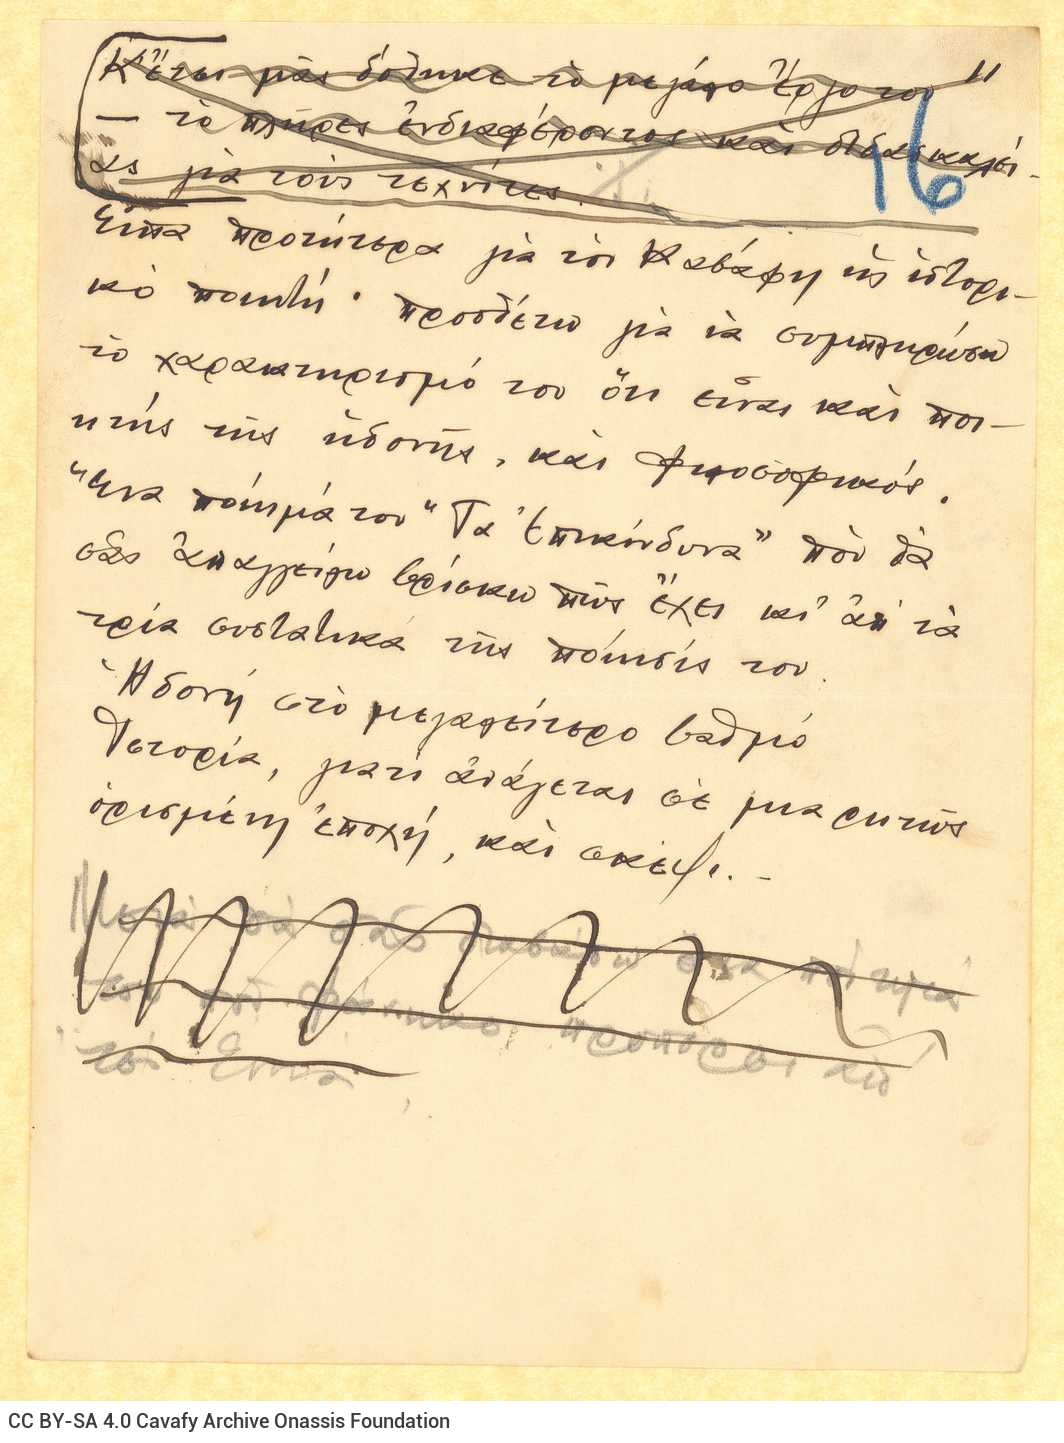 Χειρόγραφο του Αλέκου Σεγκόπουλου στο recto 43 φύλλων και χαρτιών διαφό